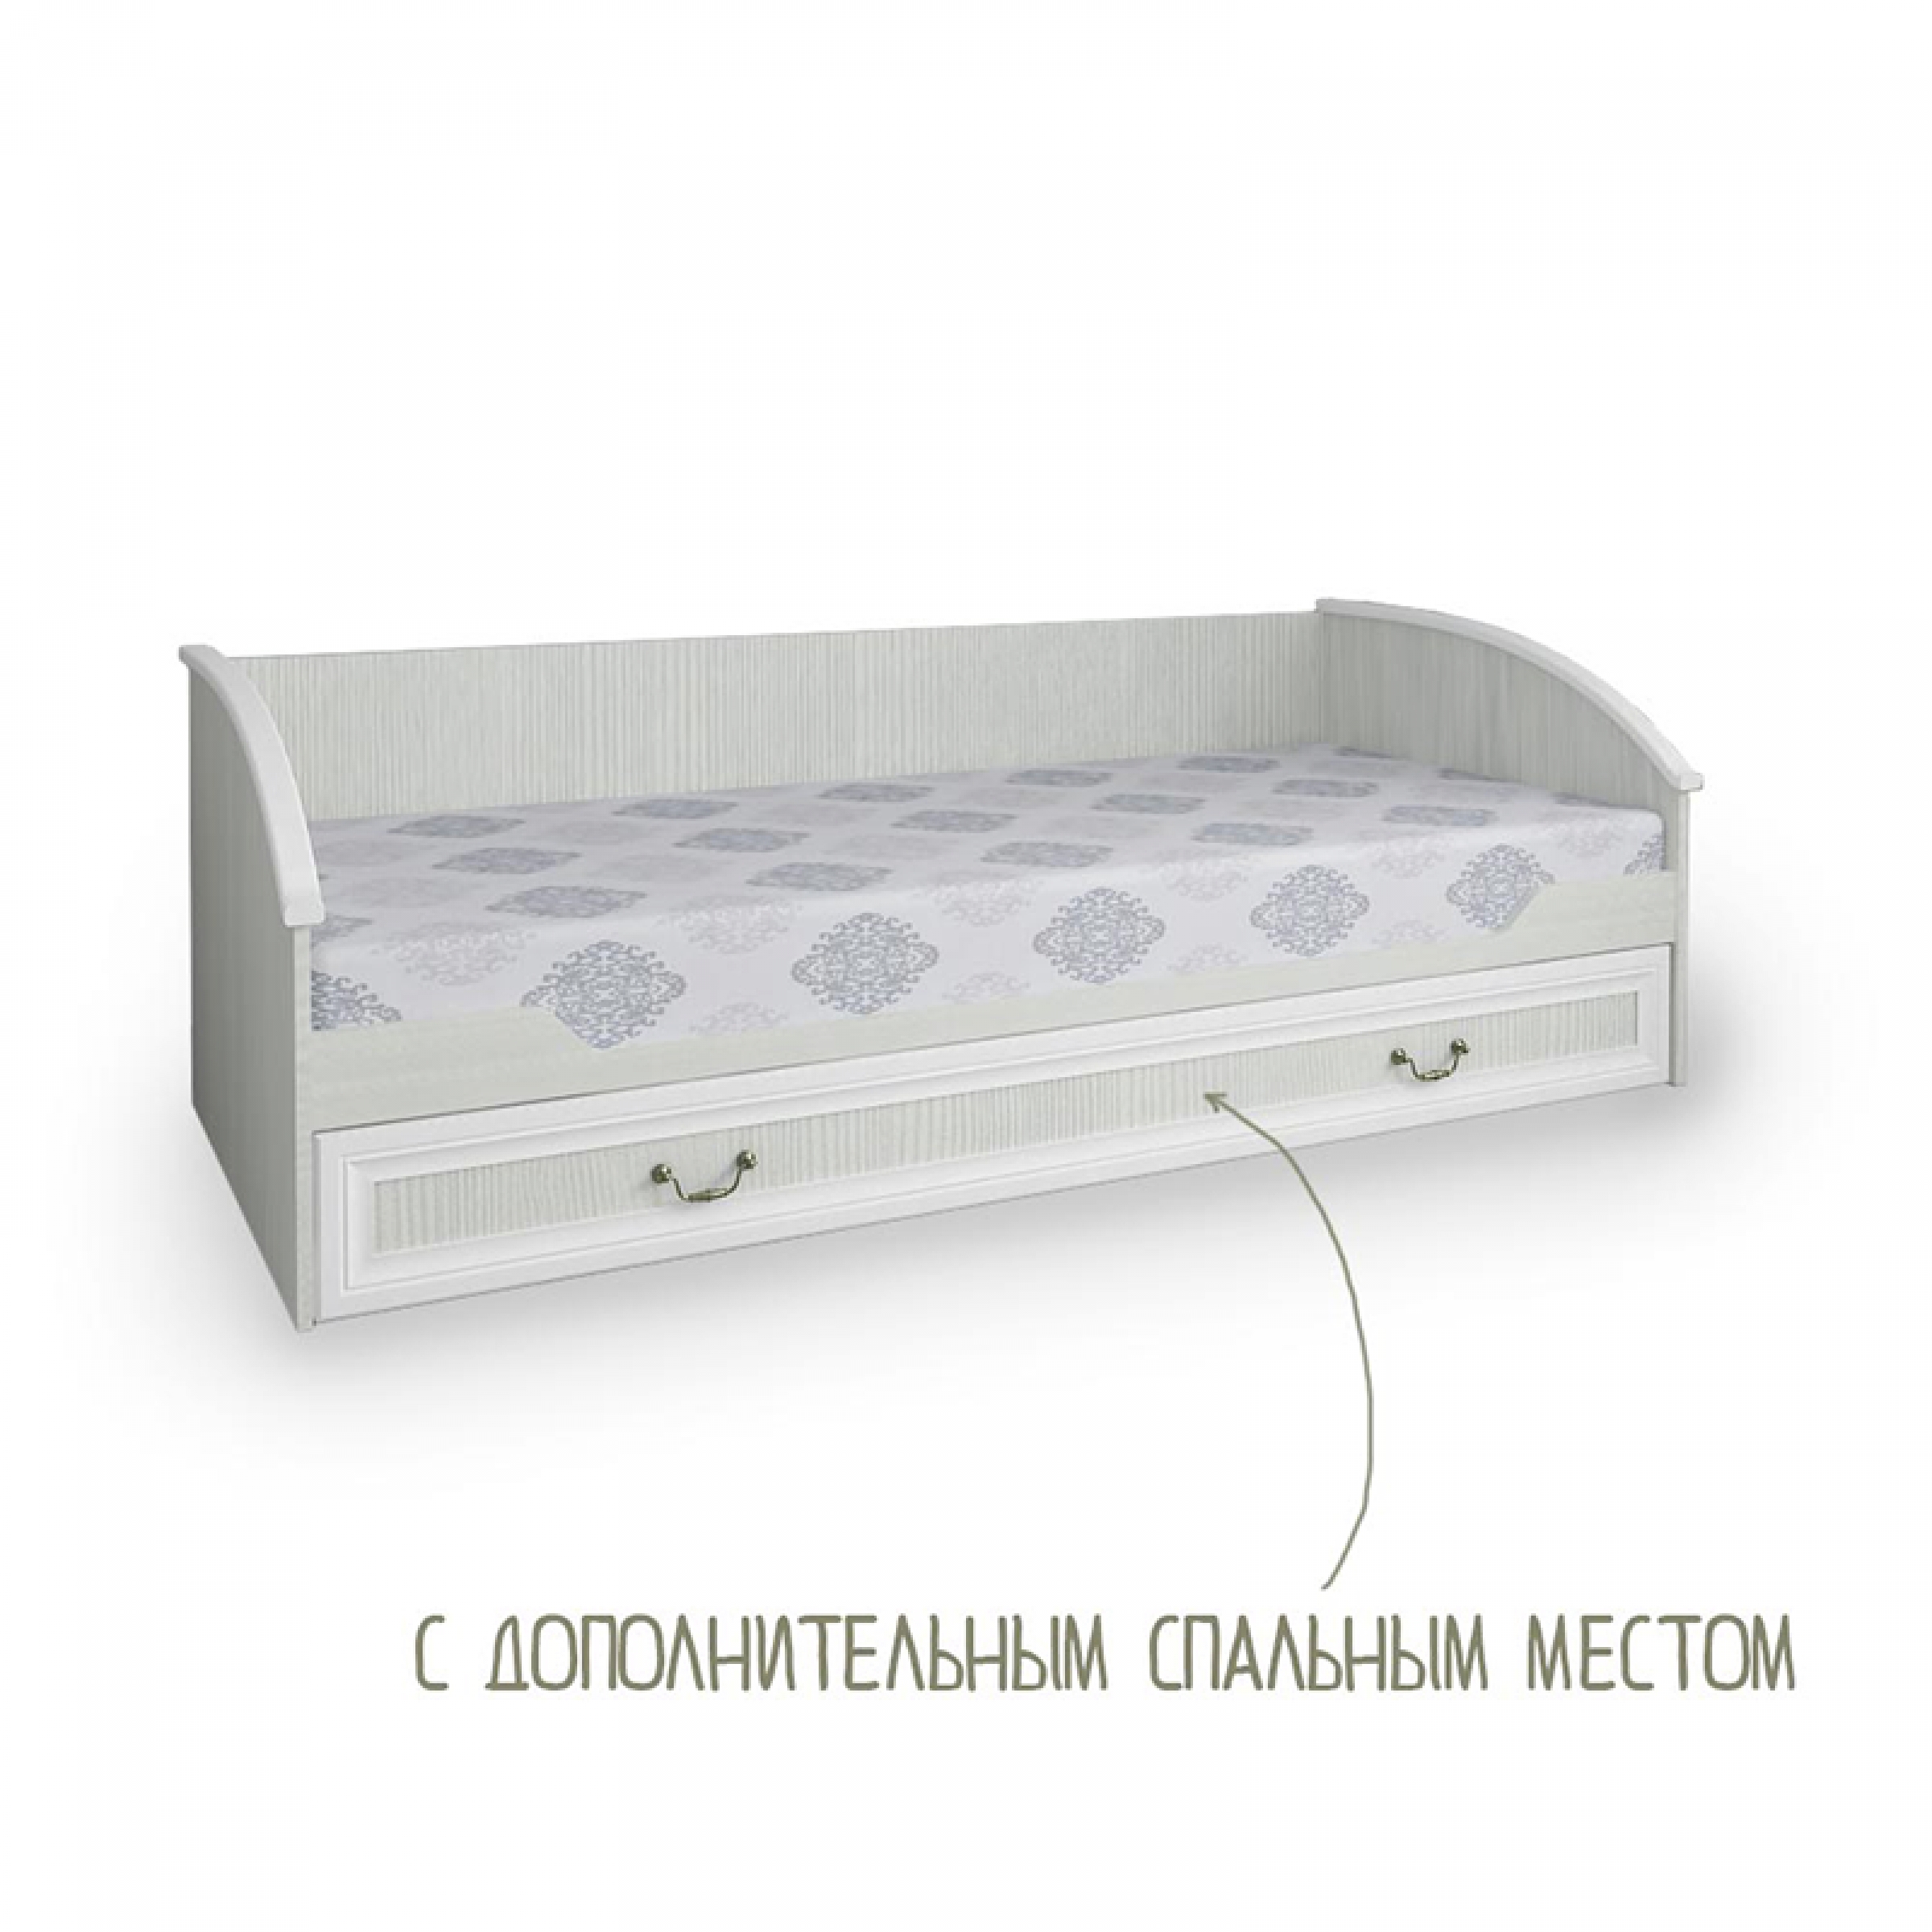 Двуспальная кровать с дополнительным спальным местом